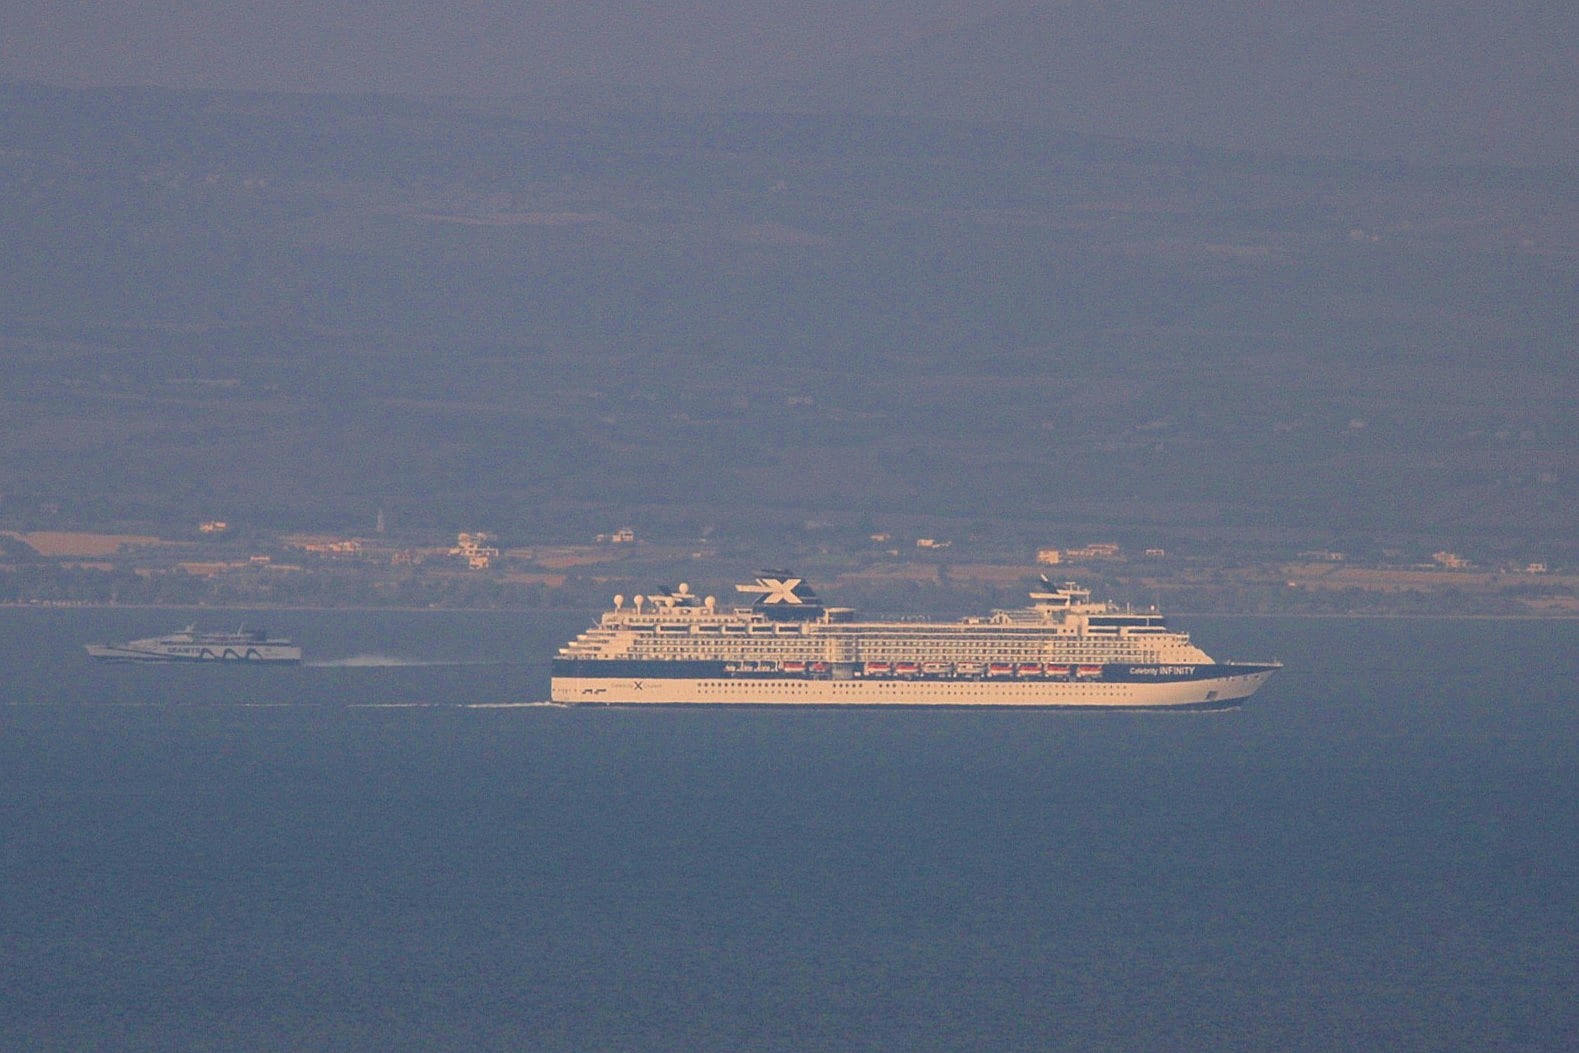 Ein grosser Passagierschiff in Griechenland auf dem Ägäisches Meer